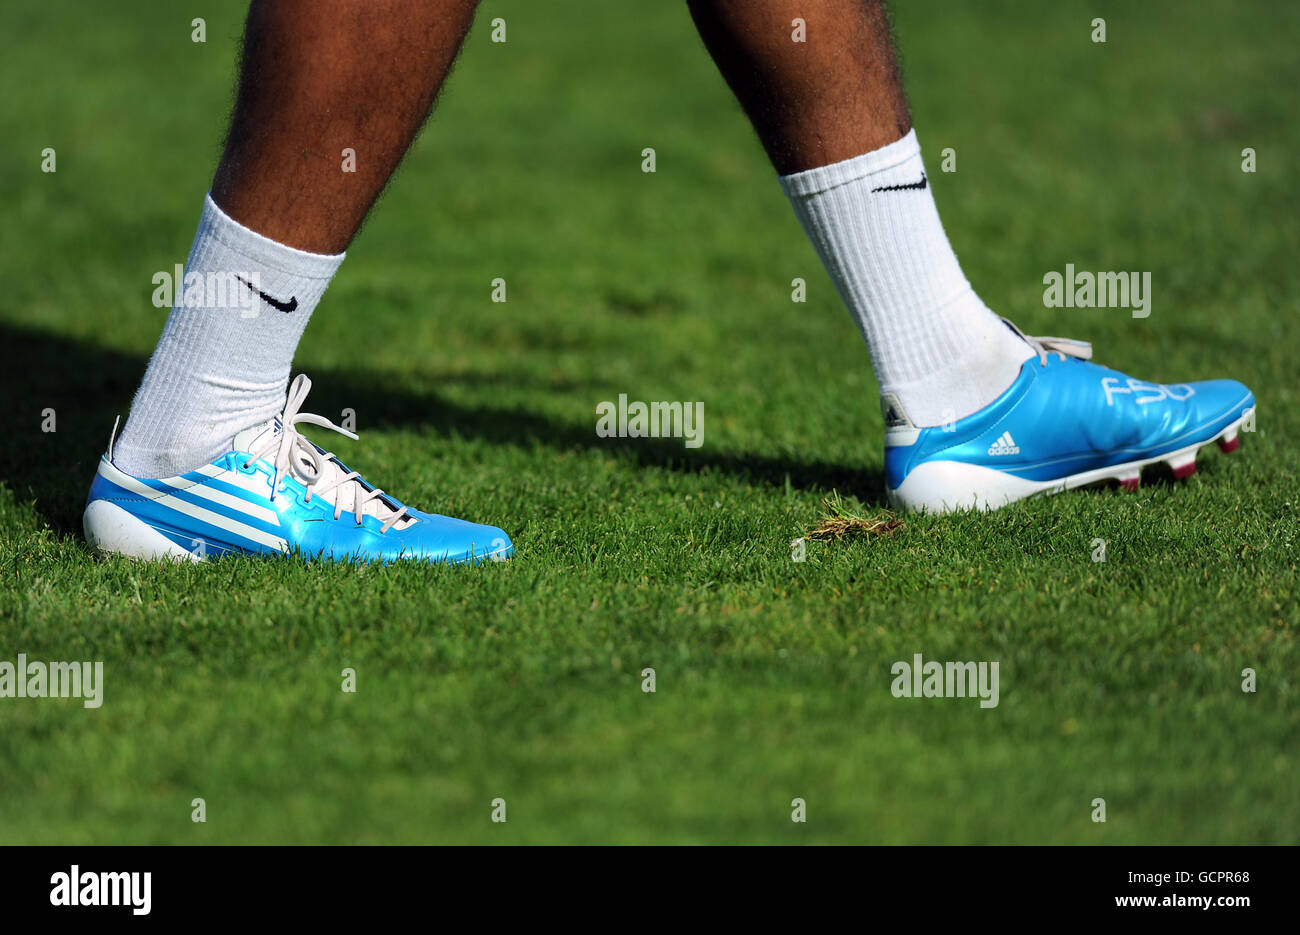 catalogar Venta anticipada Supone Vista general de un futbolista que lleva un par de azul Botas de fútbol  adidas F50 Fotografía de stock - Alamy